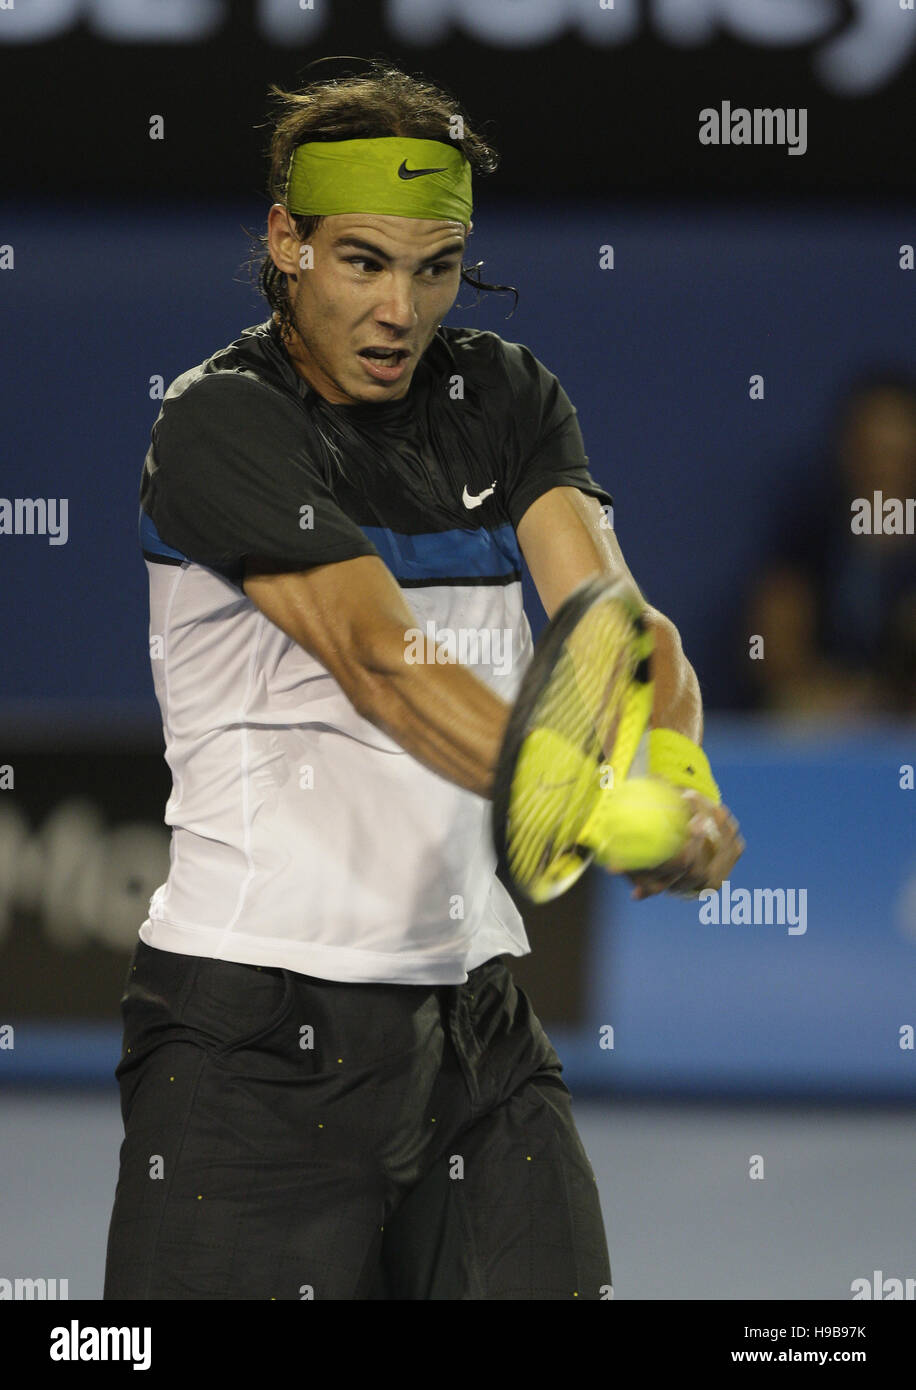 Rafael Nadal, finale chez les hommes, l'Australian Open 2009, tournoi du Grand Chelem, à Melbourne Park, Melbourne, Australie Banque D'Images